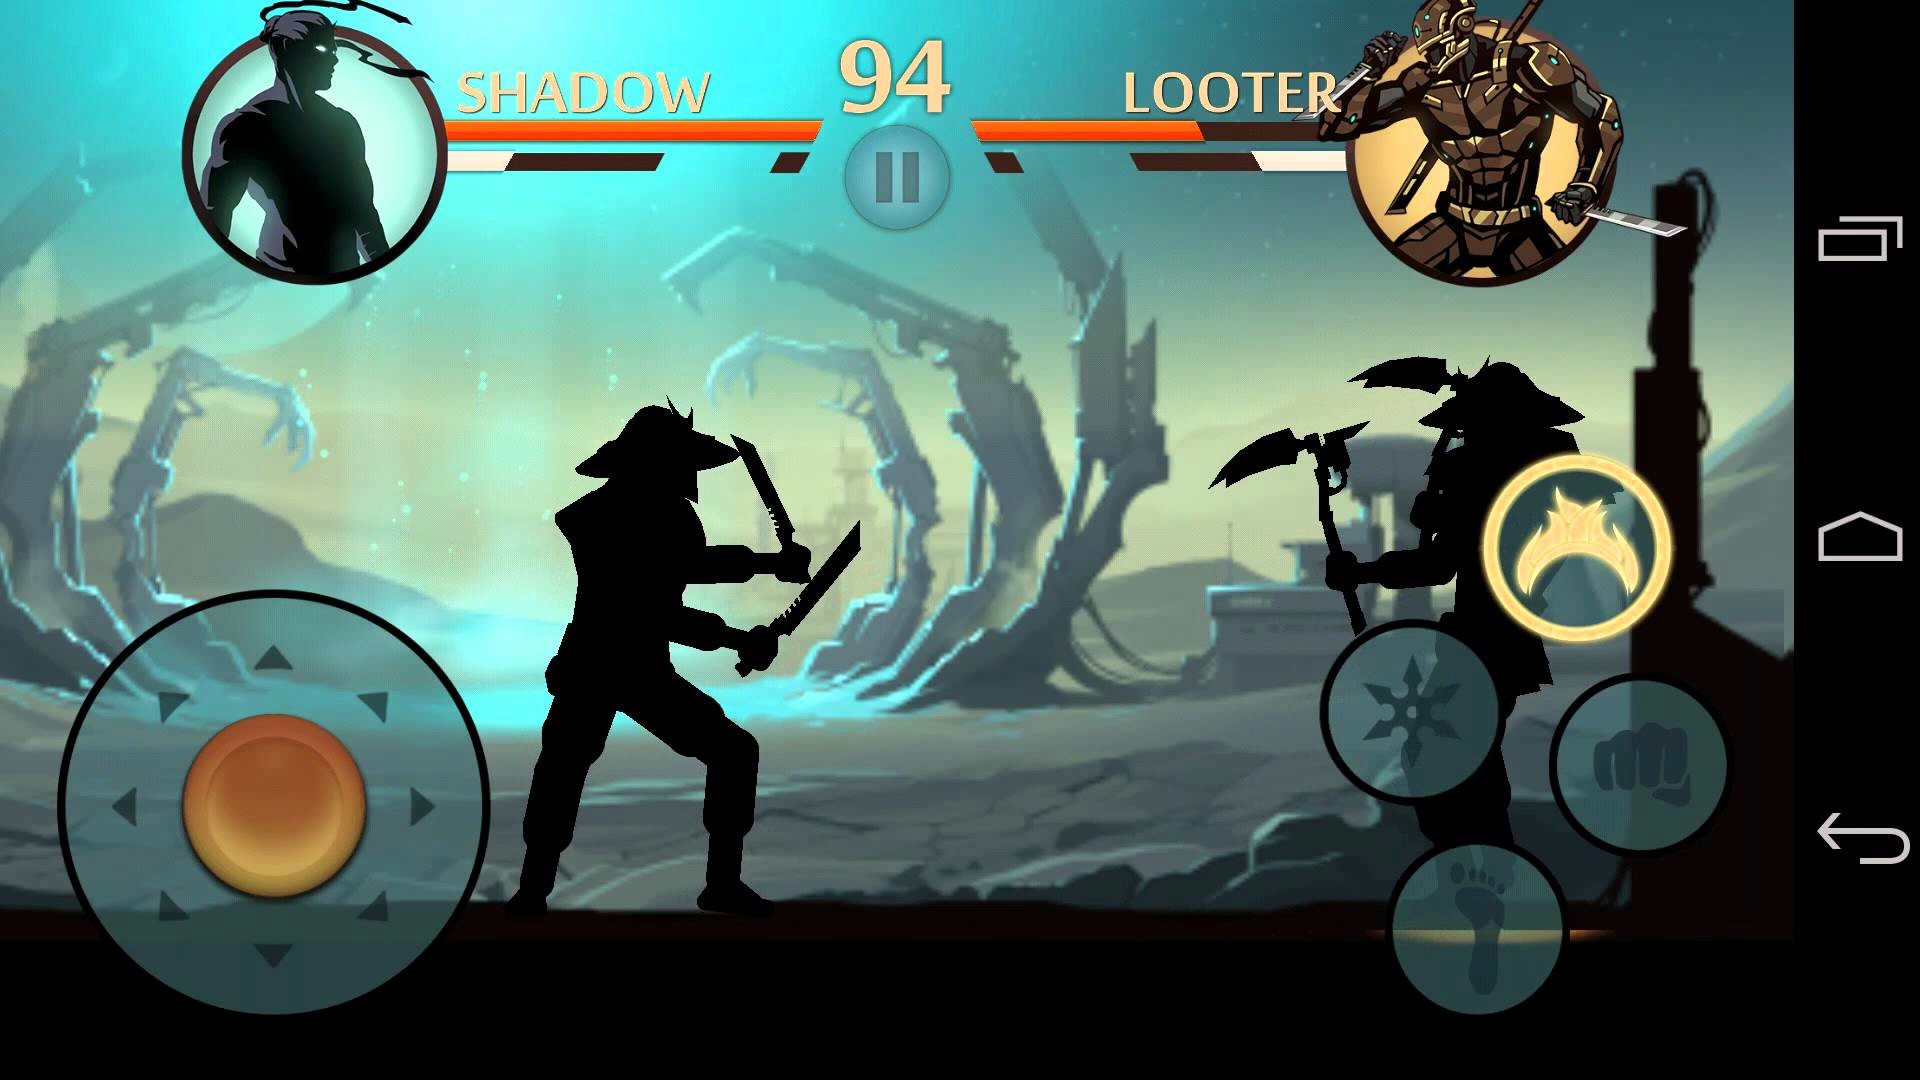 shadow fight 2 fondos de pantalla,juego de acción y aventura,juego de pc,juegos,juego de disparos,personaje de ficción